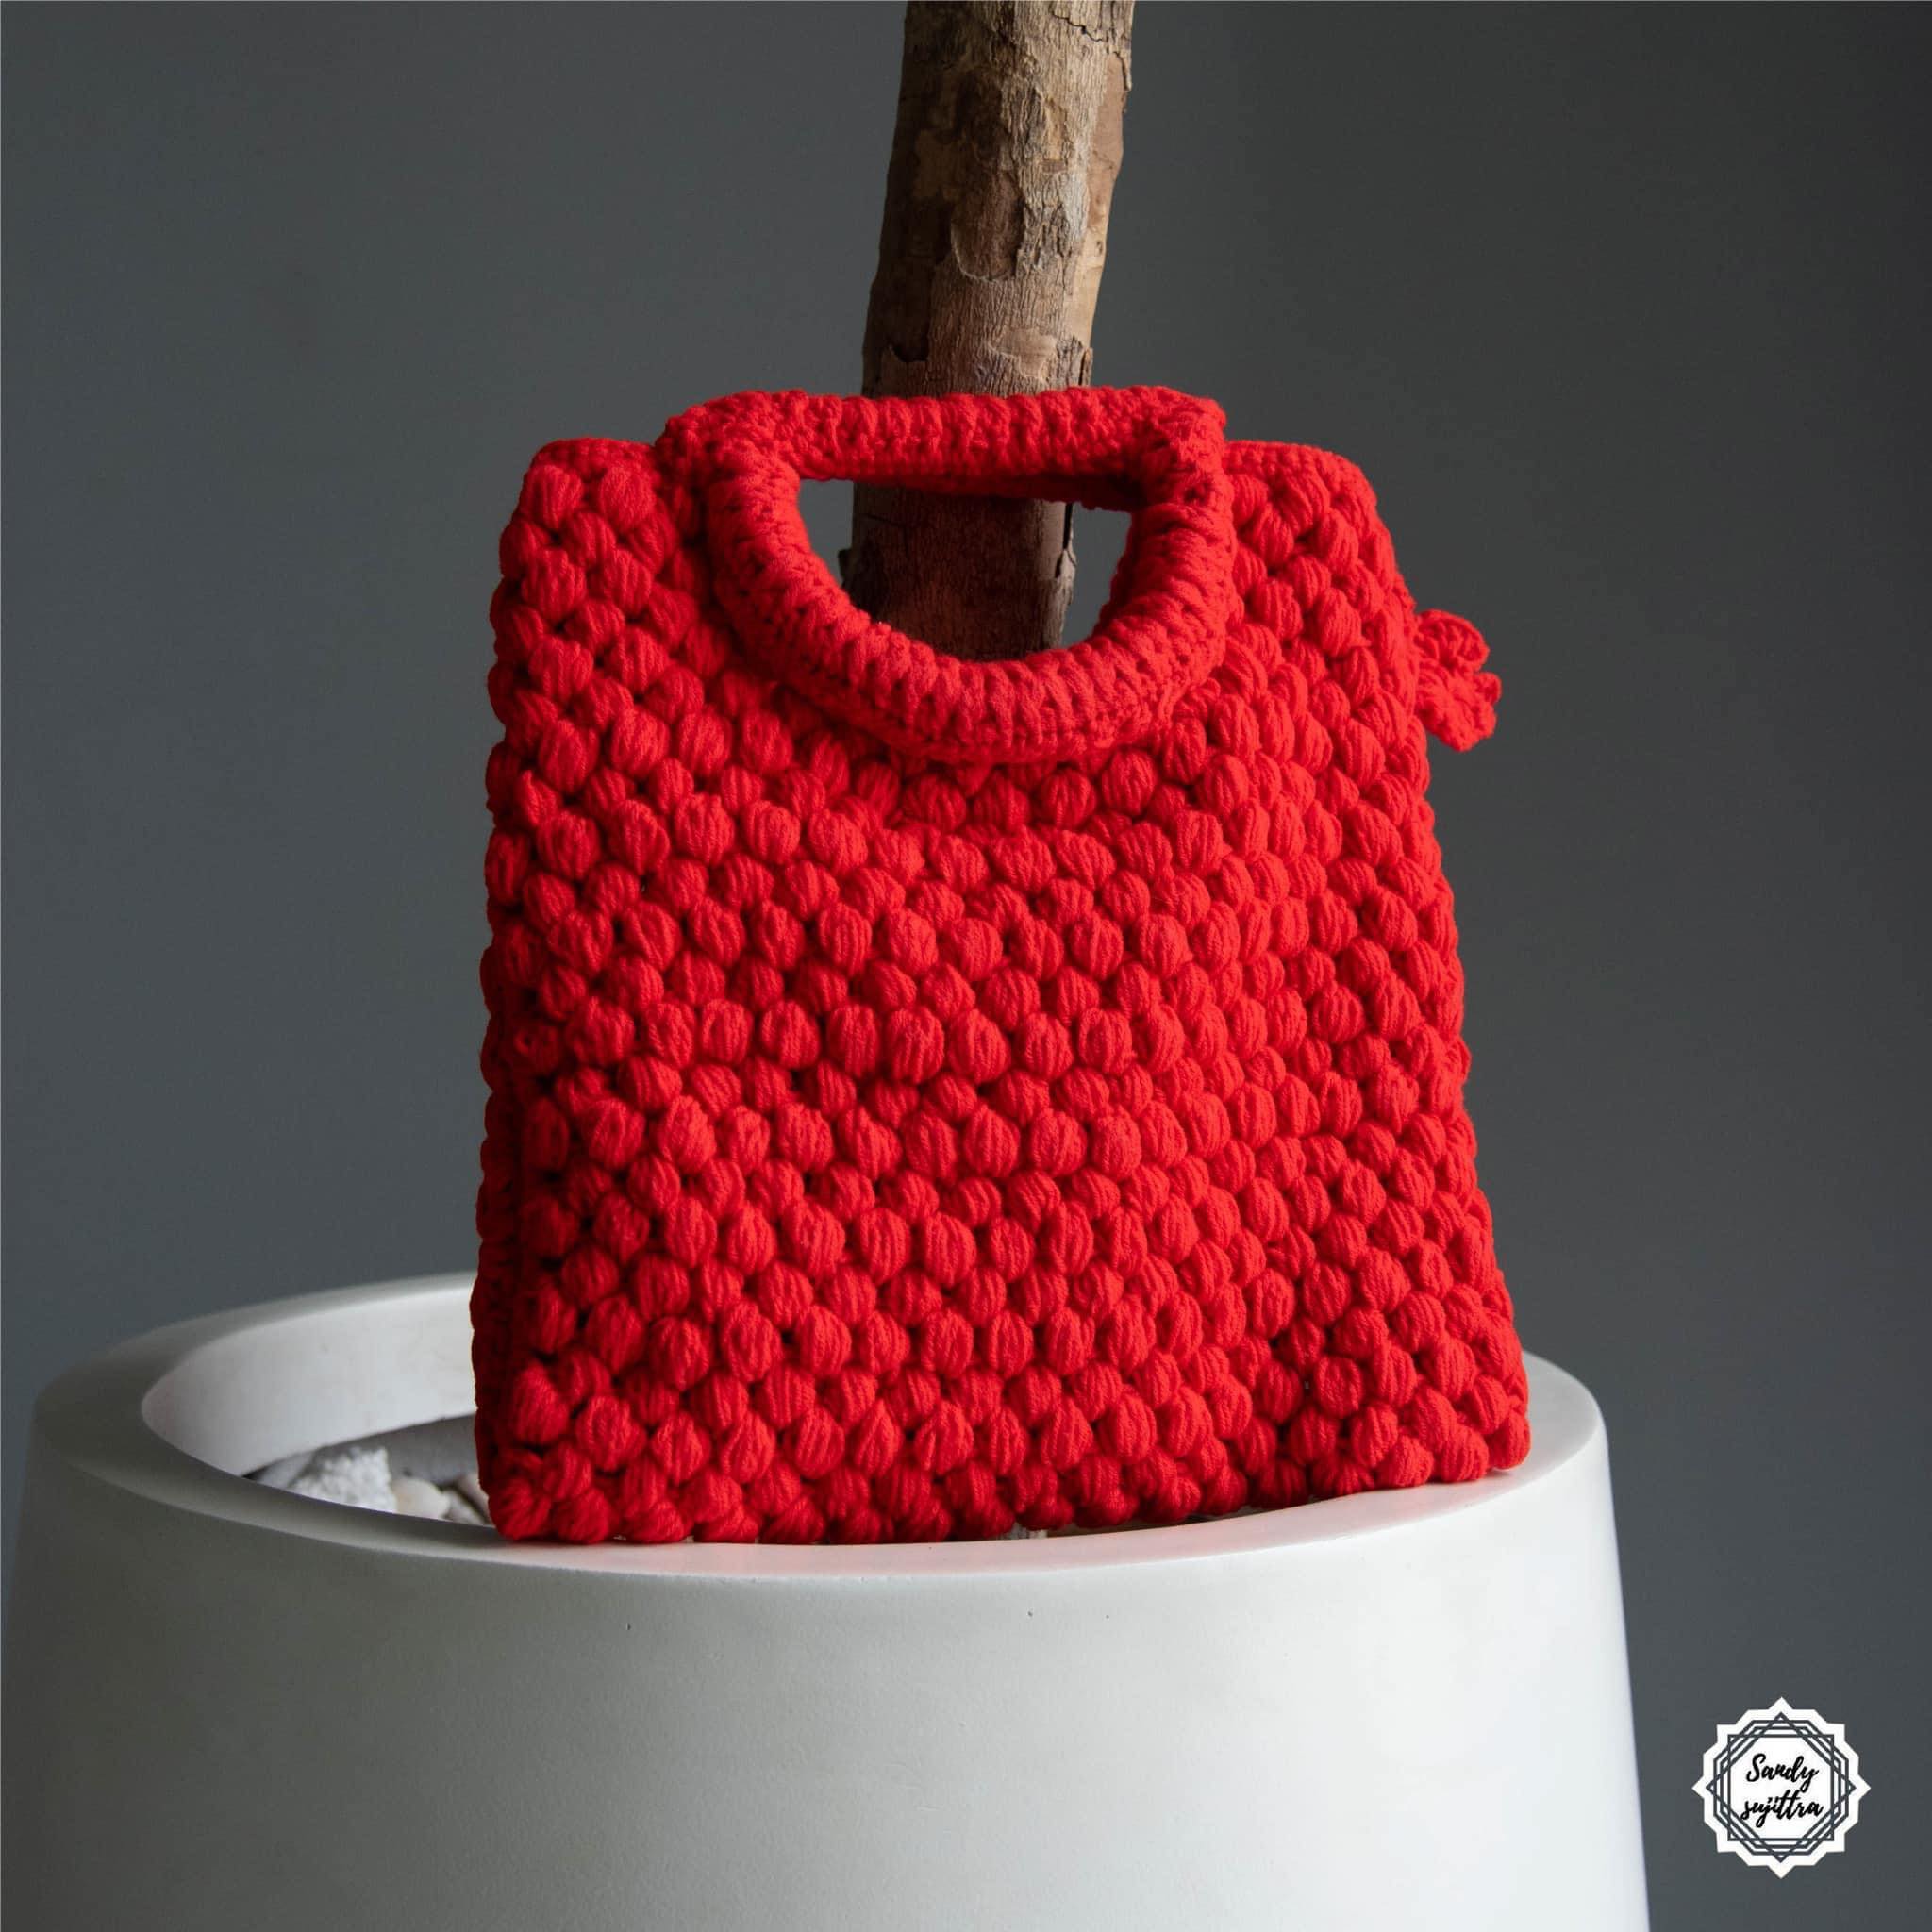 Crochet 01 กระเป๋าถักไหมพรมโครเช น่ารัก สีแดง